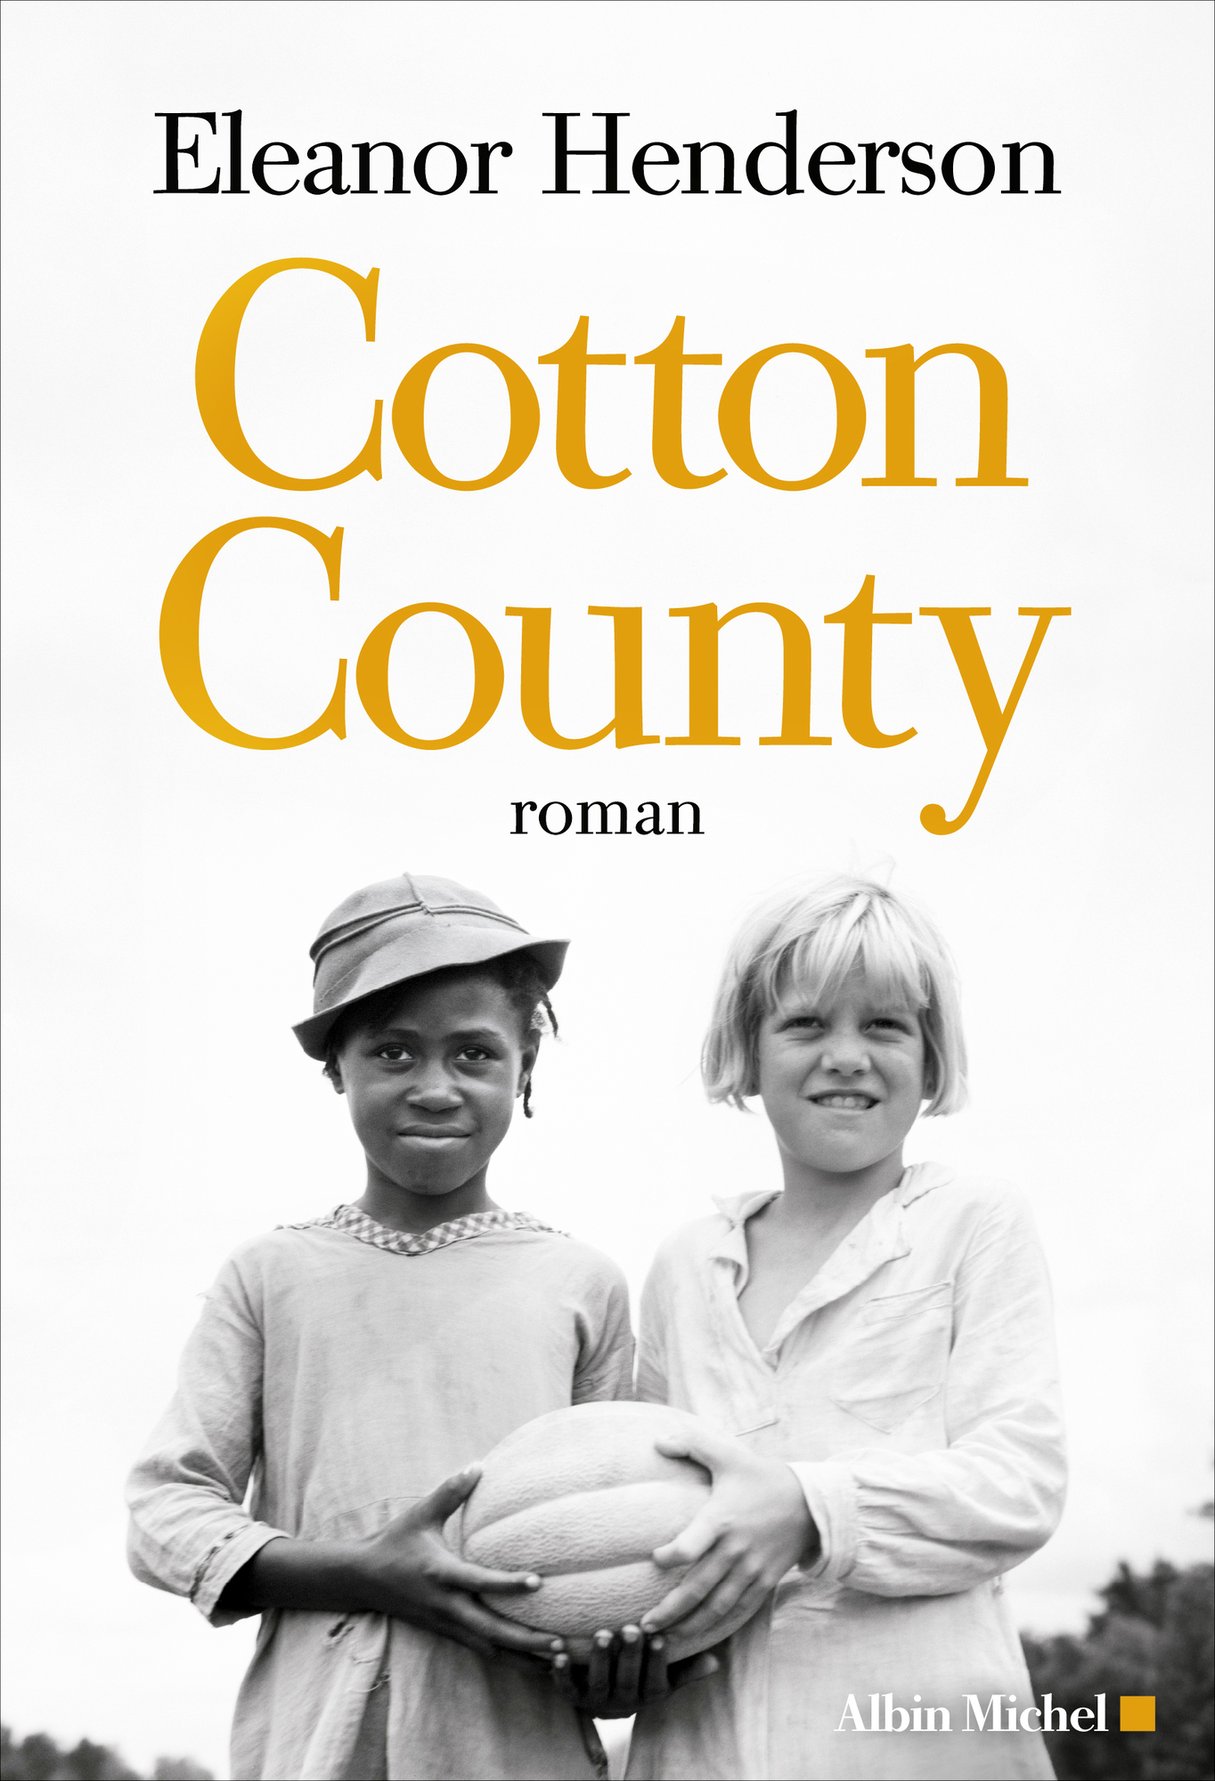 Cotton County, d’Eleanor Henderson, traduit par Amélie Juste-Thomas, Albin Michel, 658 pages, 23,90 euros